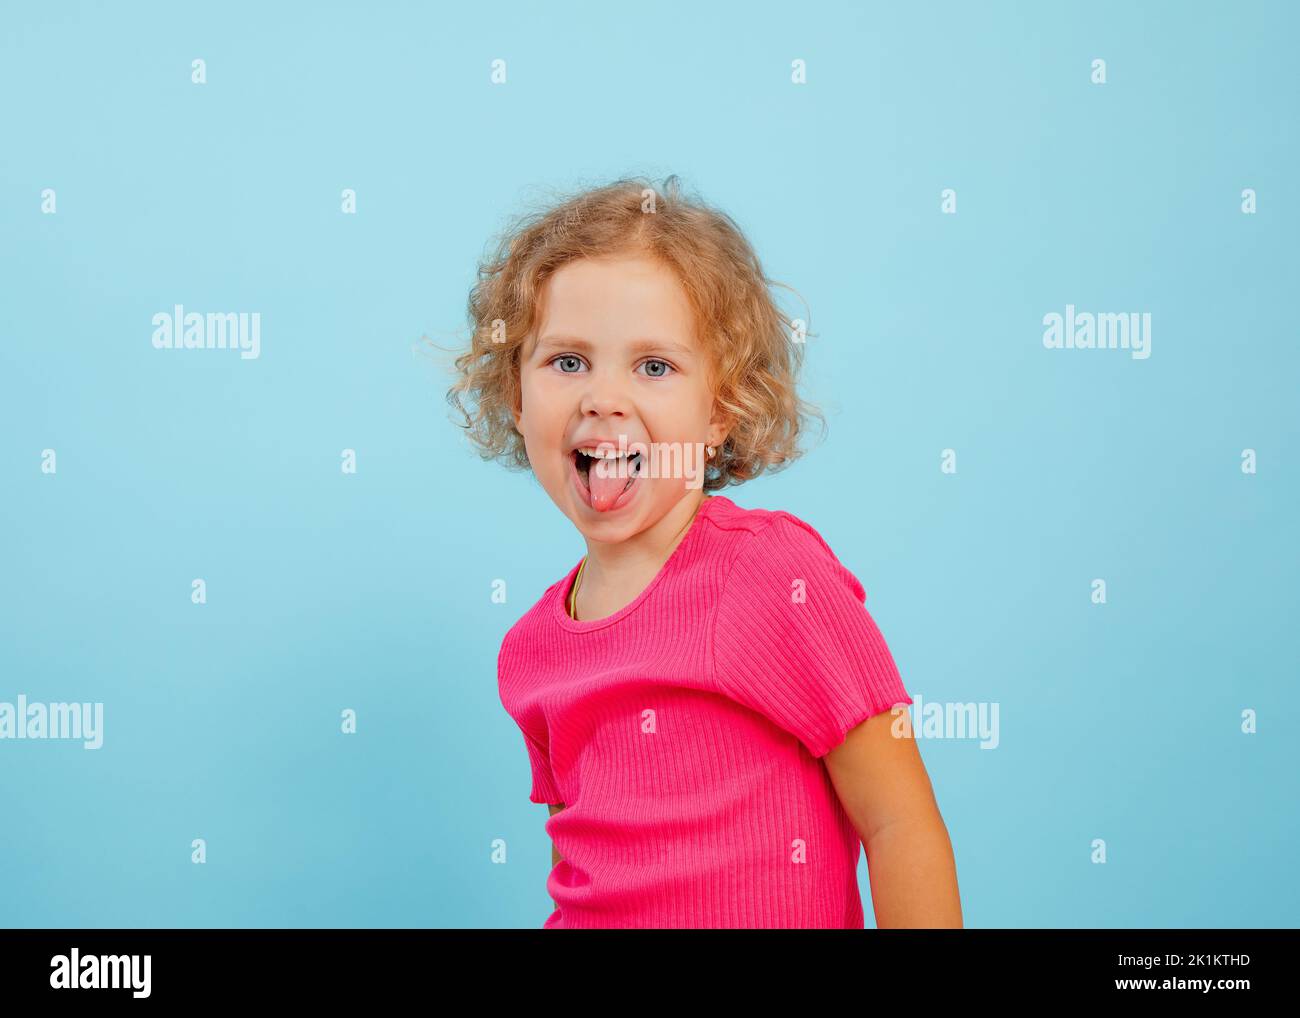 Ritratto di felice bambina con occhi blu con capelli ricci che guardano, mostrando la lingua, grimacing teasing su sfondo blu. Foto Stock